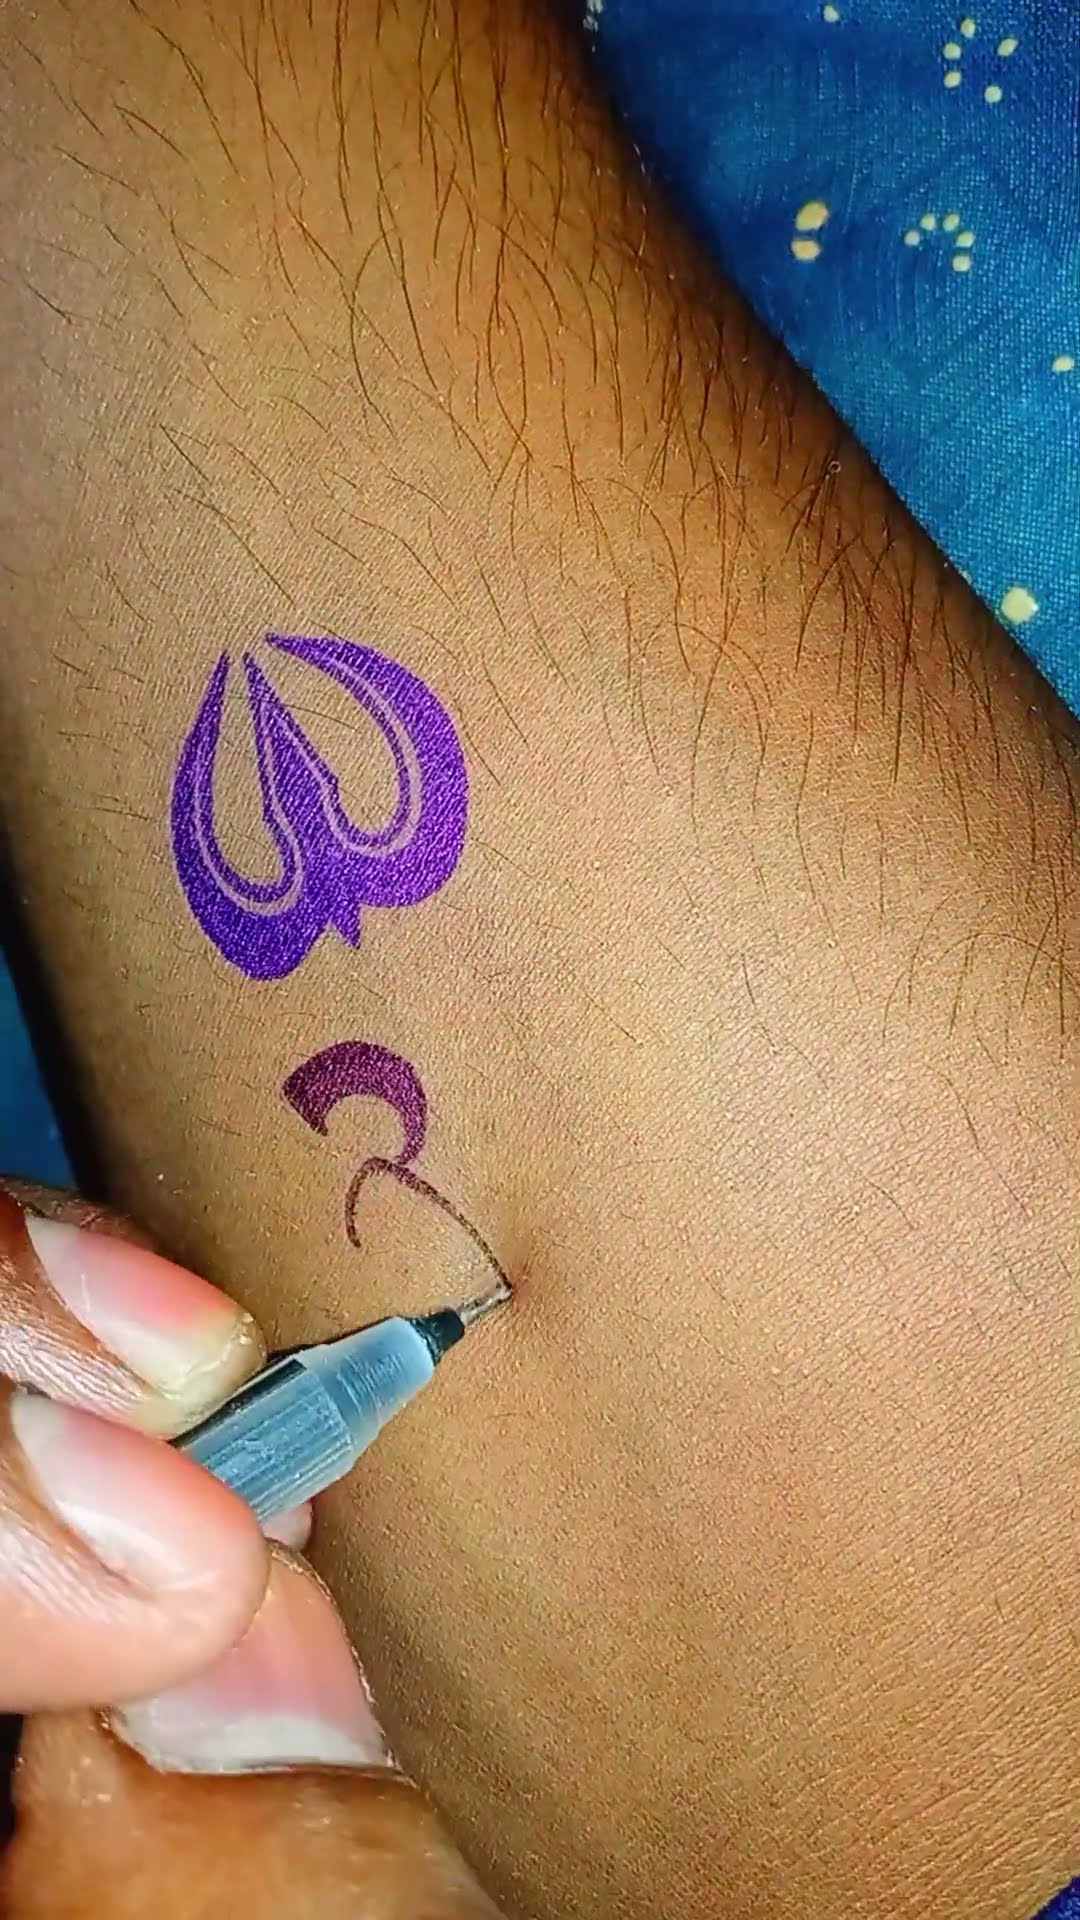 Lord shiva tattoo inked by Mahesh Naidoo Nashik @ m tattoo studio  Maharashtra India call 9822057818 #shivatattoo #mahadev #shiva #har  #harharmahadev #shiv #mahakal #shivay #shivshankar #tattoo #shivaay  #bholenath #lordshiva #tattoos #bhole #shivbhakt #